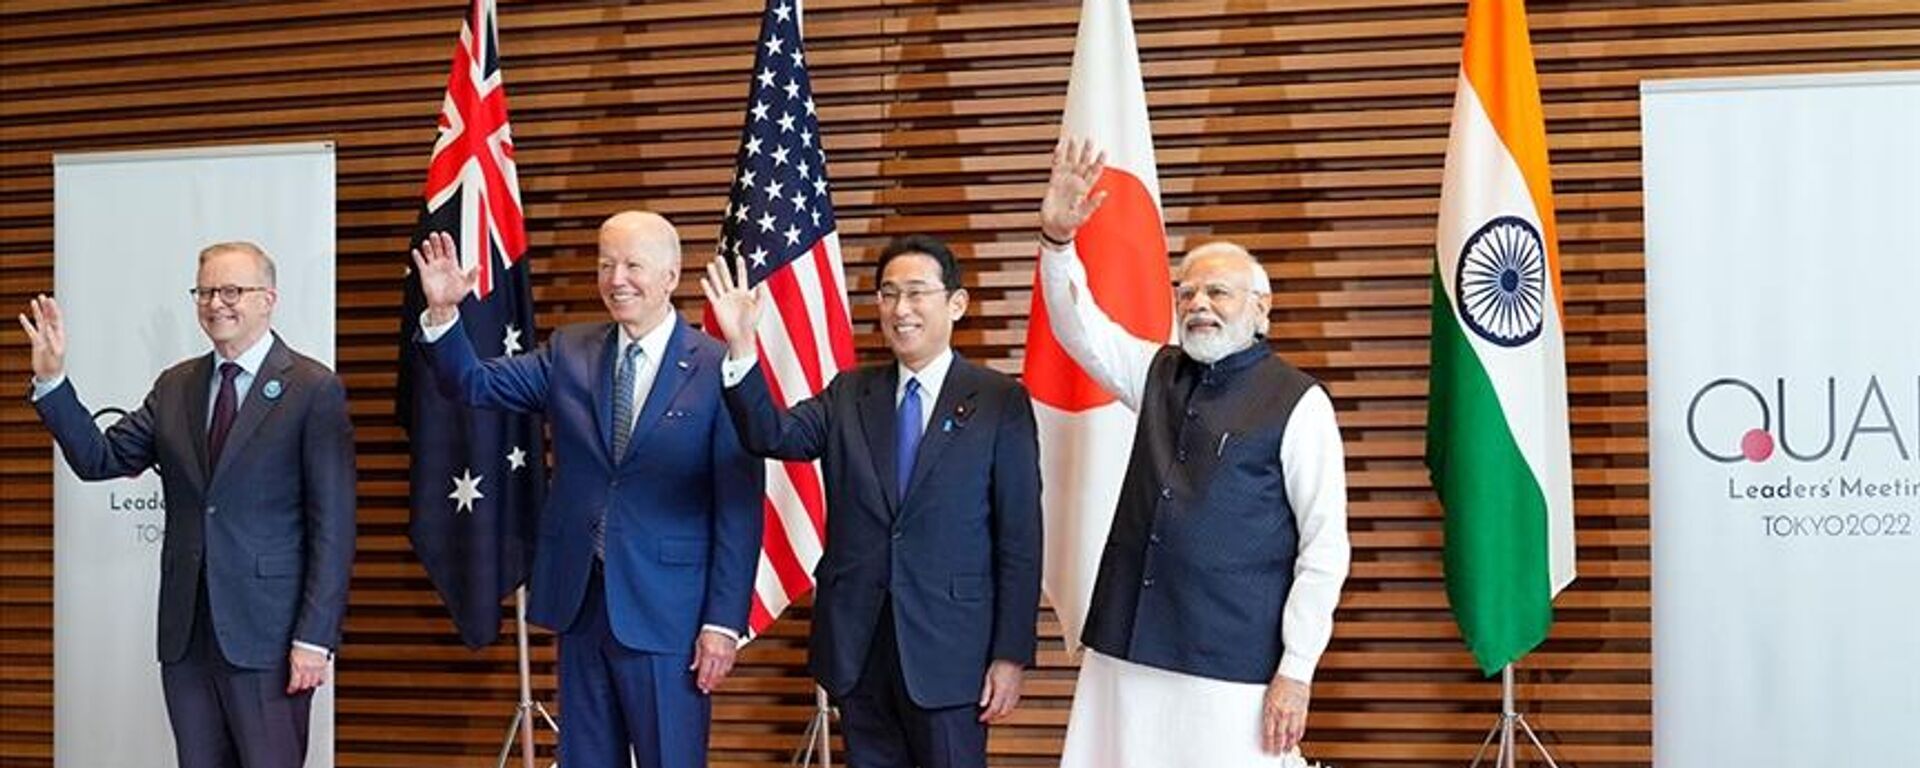 Japonya başkenti Tokyo'daki Quad zirvesinde soldan sağa Avustralya Başbakanı Anthony Albanese, ABD Başkanı Joe Biden, Japonya Başbakanı Fumio Kişida, Hindistan Başbakanı Narendra Modi - Sputnik Türkiye, 1920, 24.05.2022